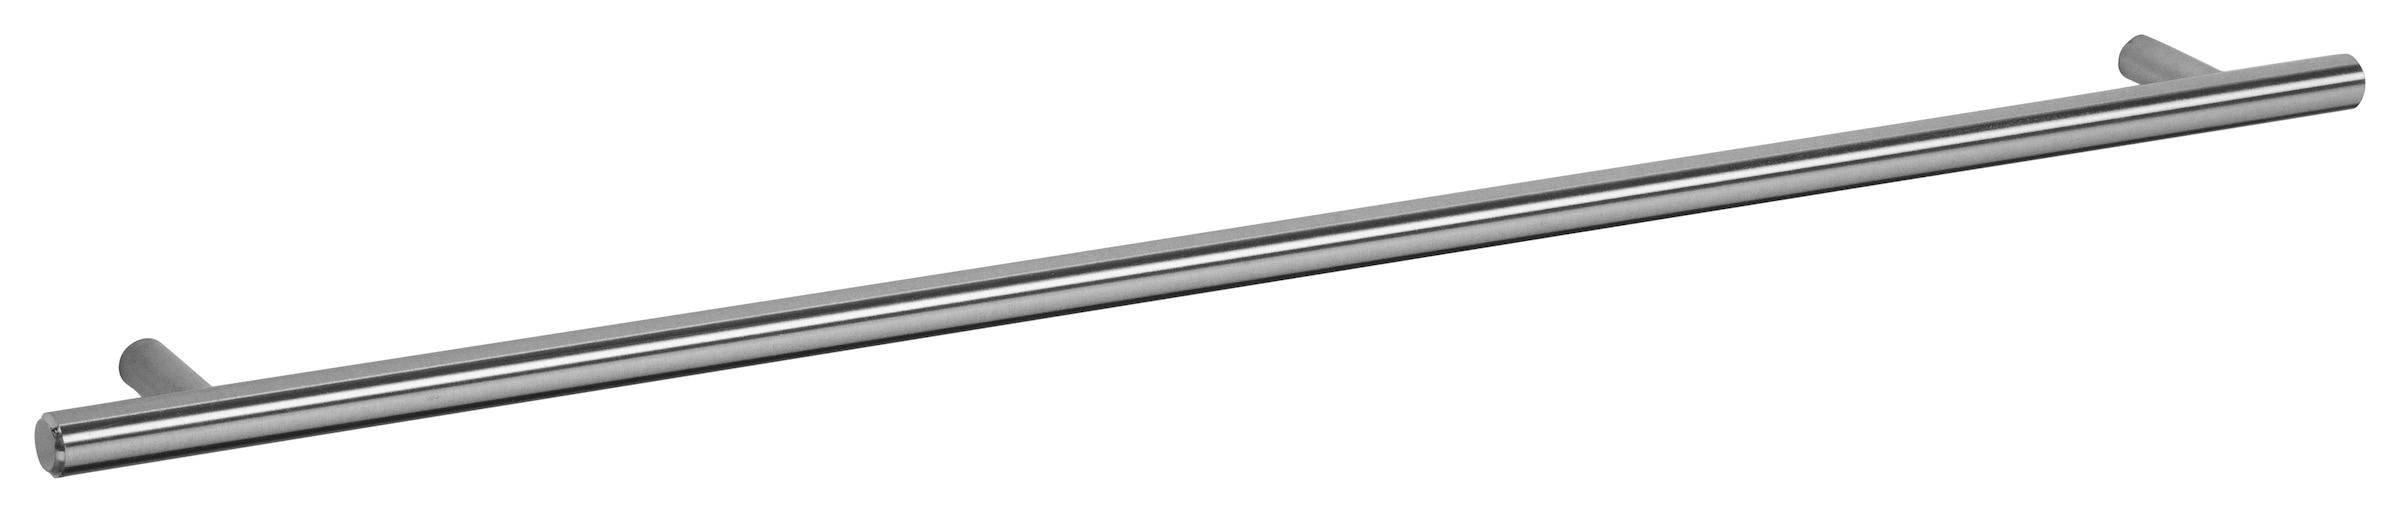 OPTIFIT Backofen/Kühlumbauschrank »Bern«, 60 cm breit, 176 cm hoch, höhenverstellbare Stellfüsse, mit Metallgriff